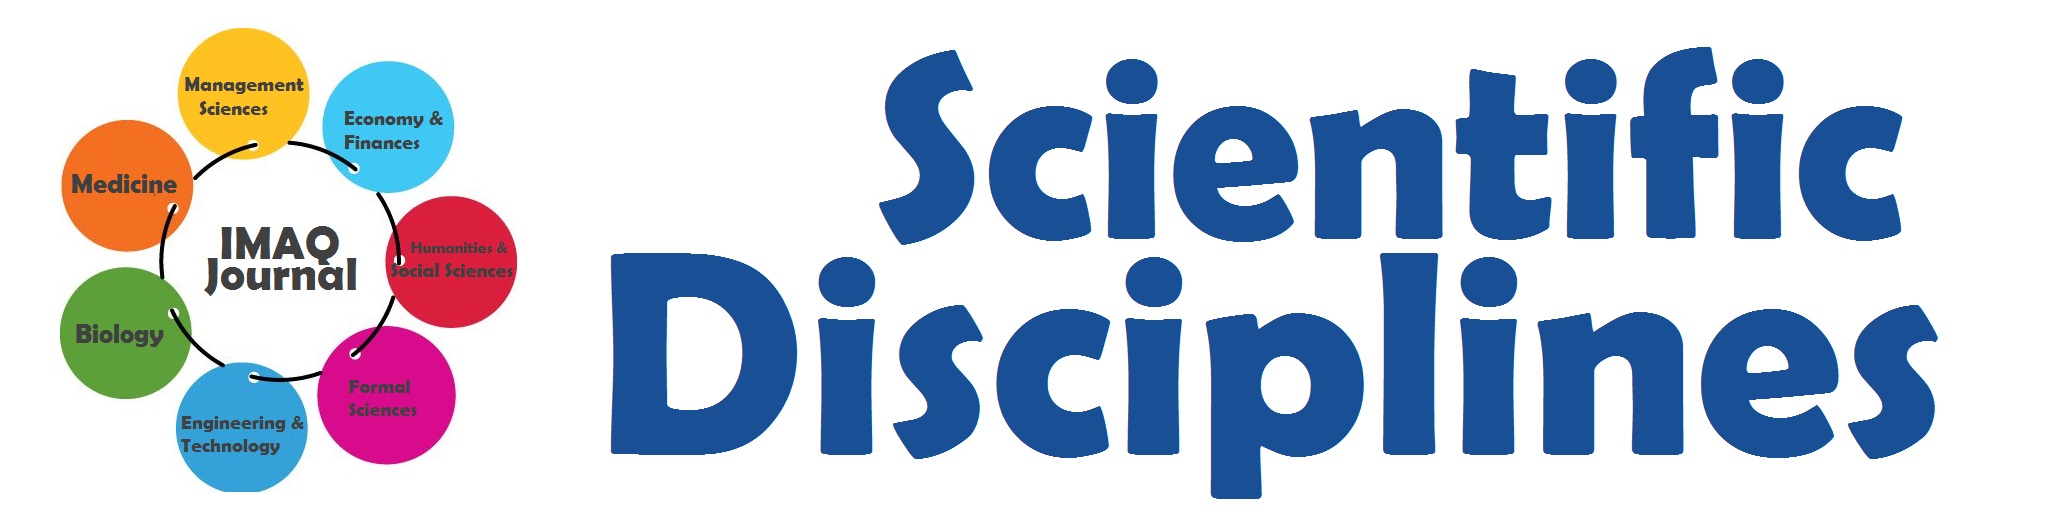 Scientific Disciplines of IMAQ Journal